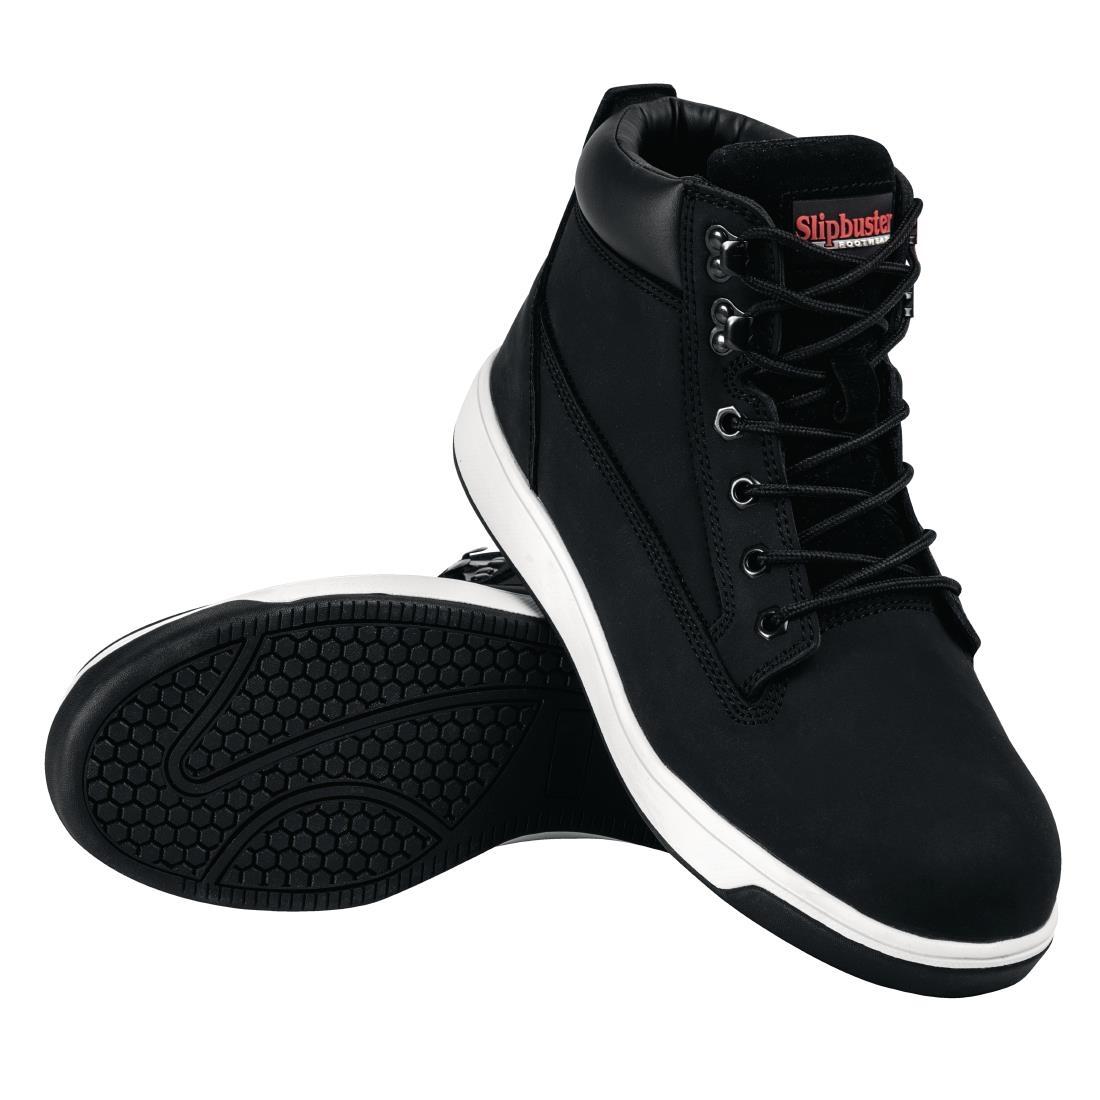 Slipbuster Sneaker Boots Black 40 - BB422-40  - 8